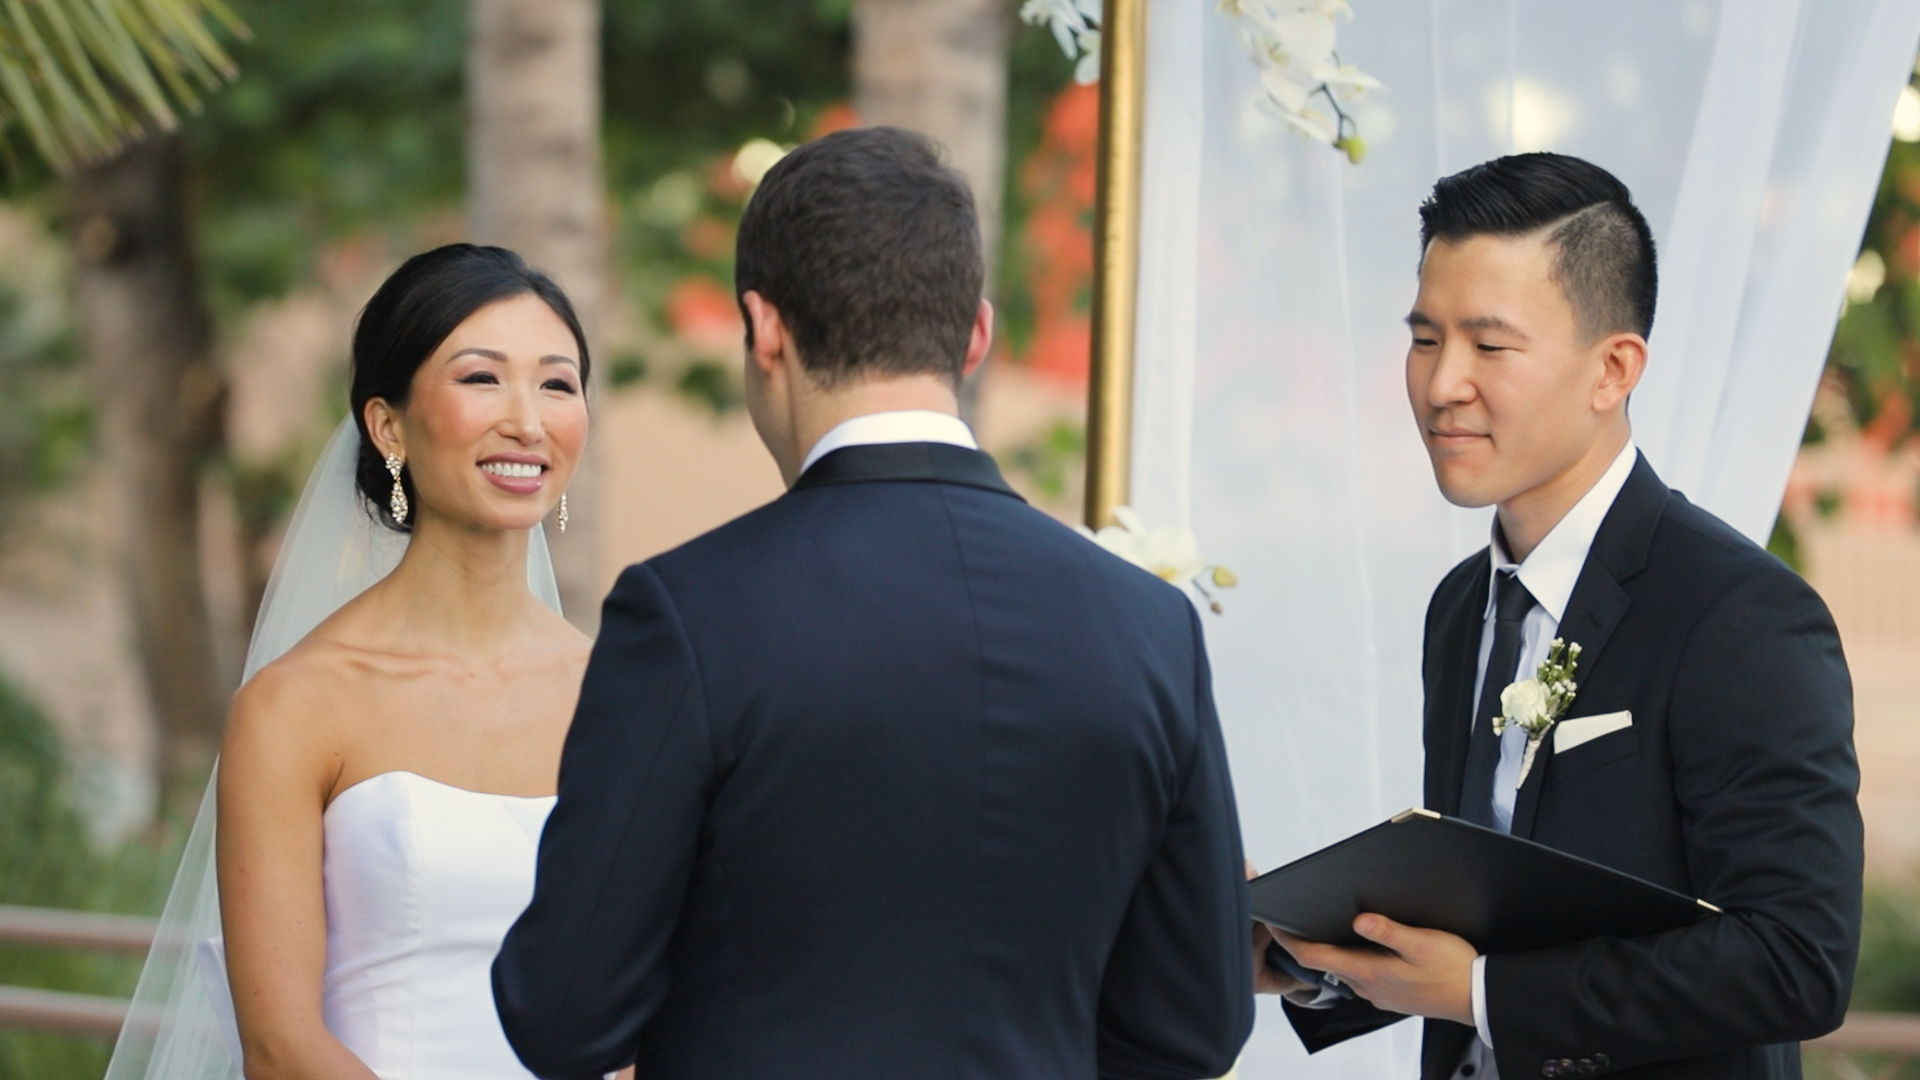 Live Stream Your Wedding Ceremony